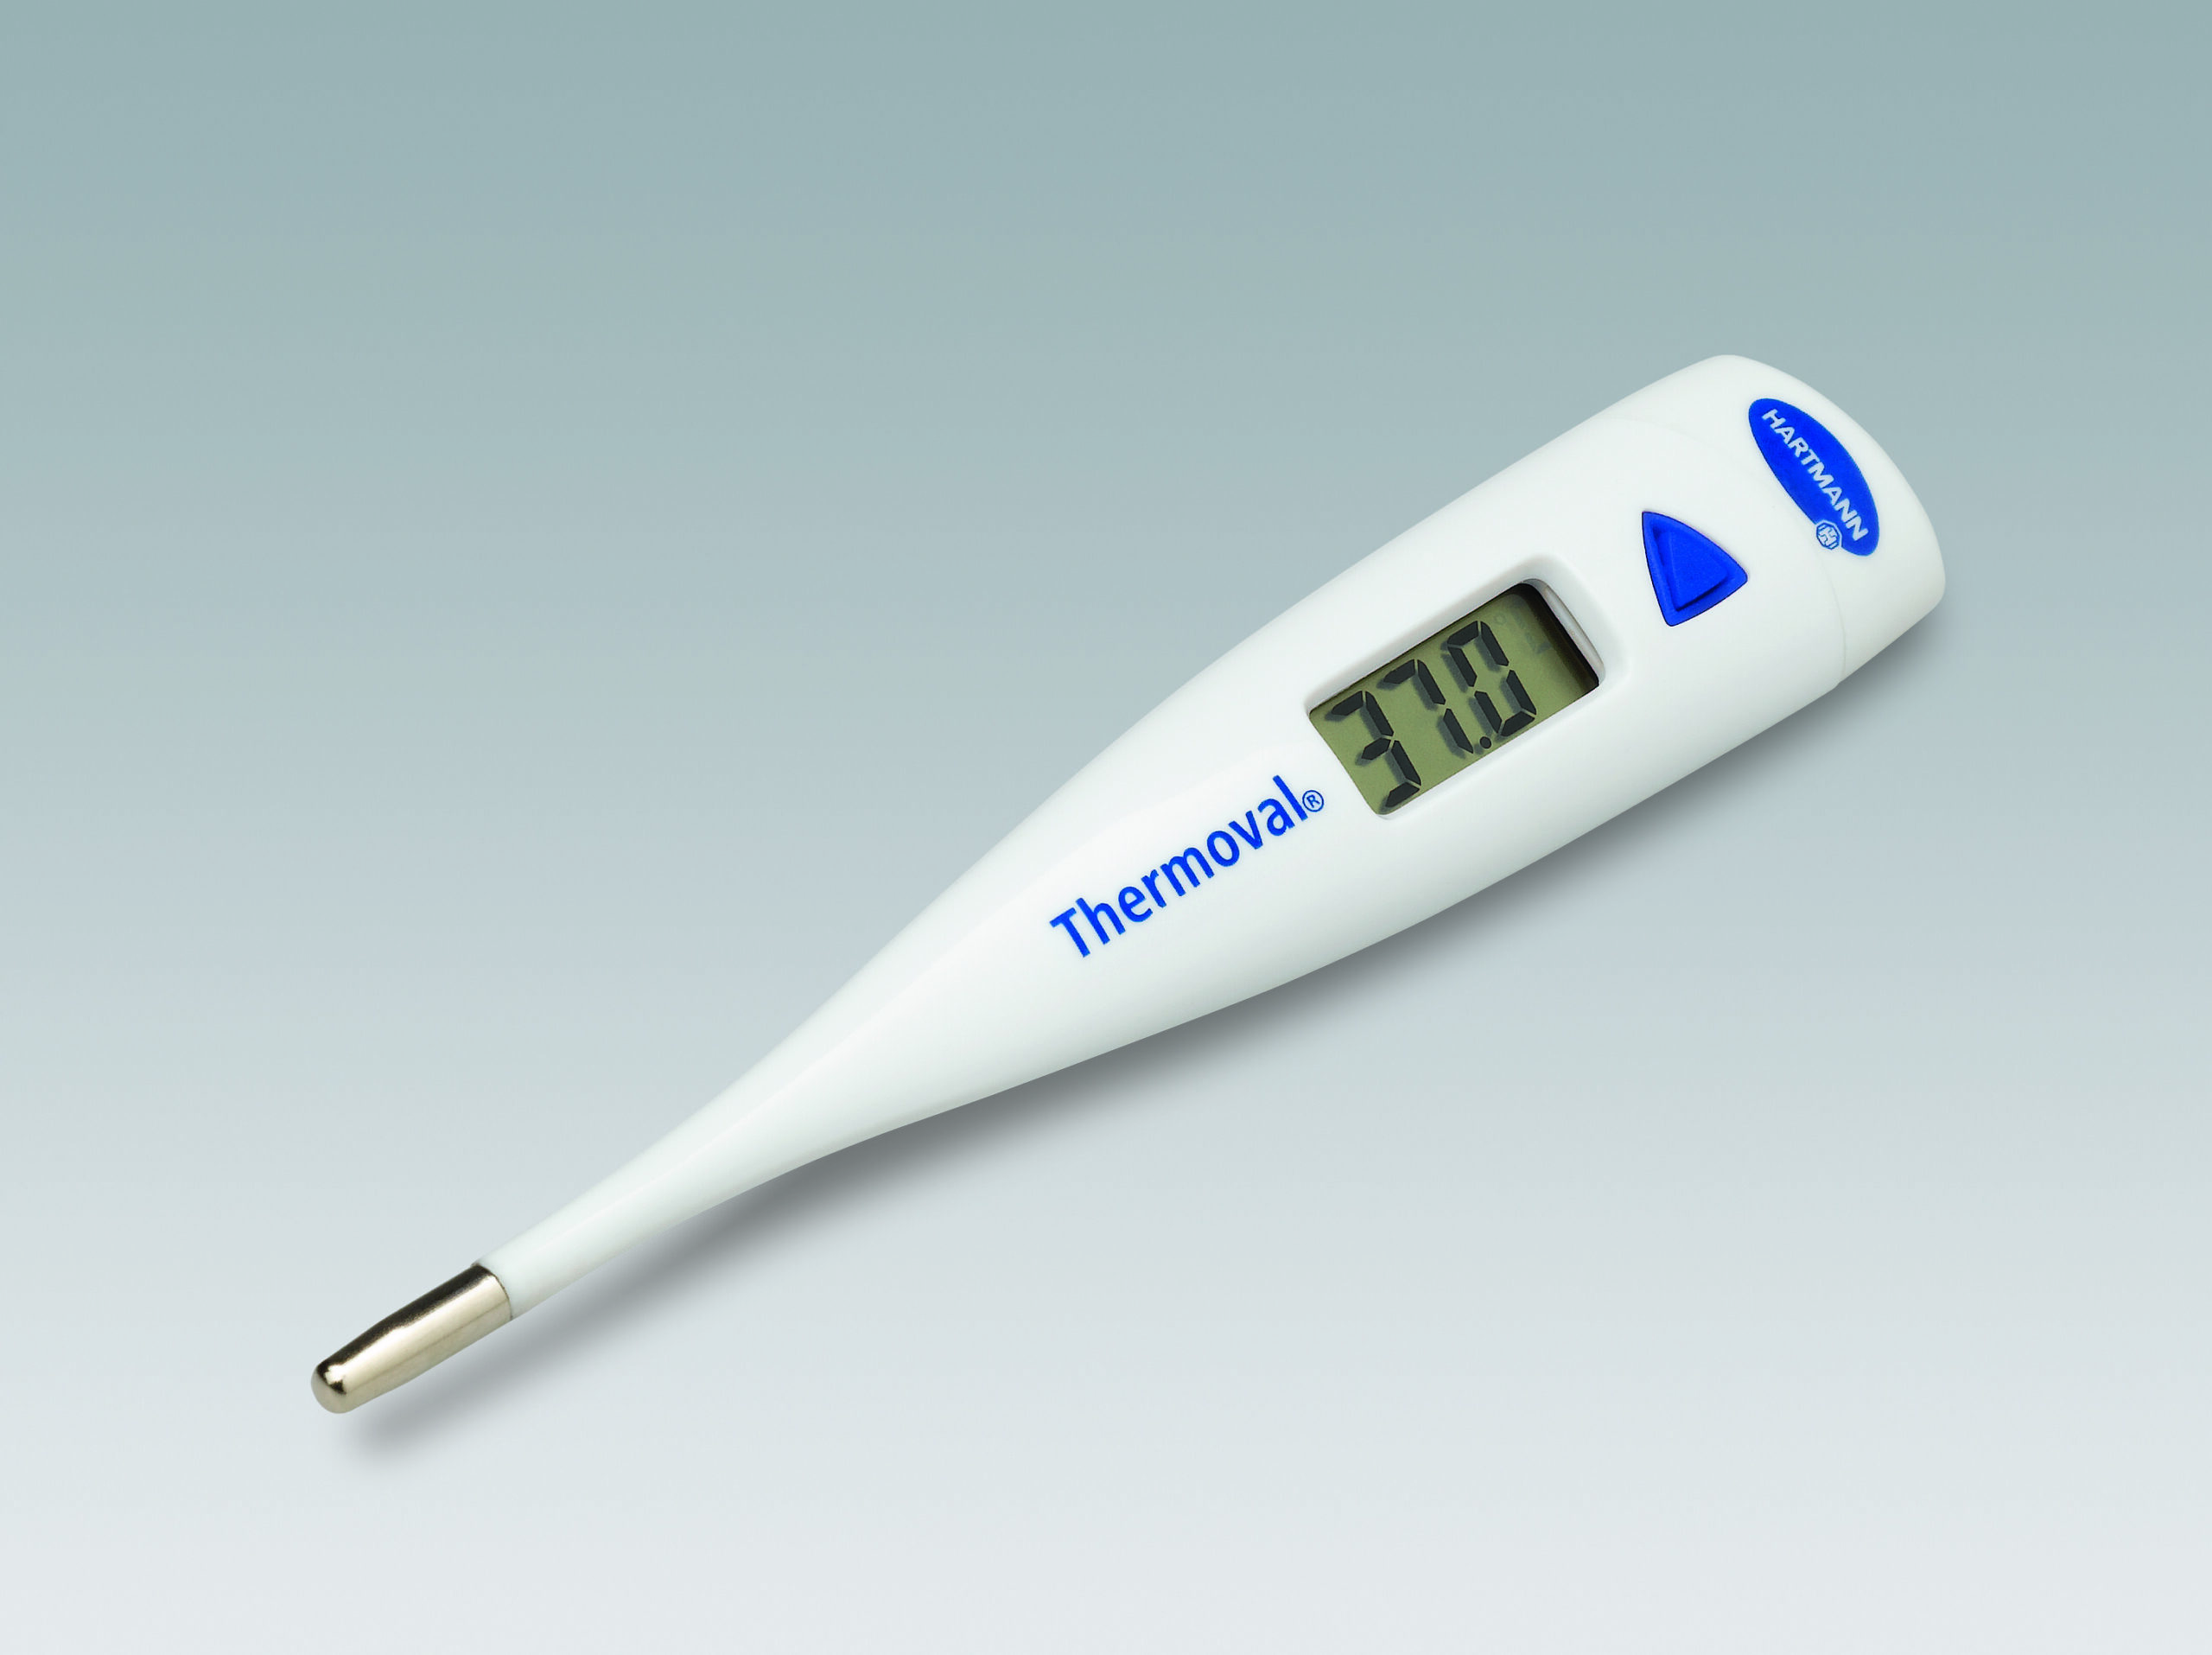 HartMann Thermoval termometru digital standard